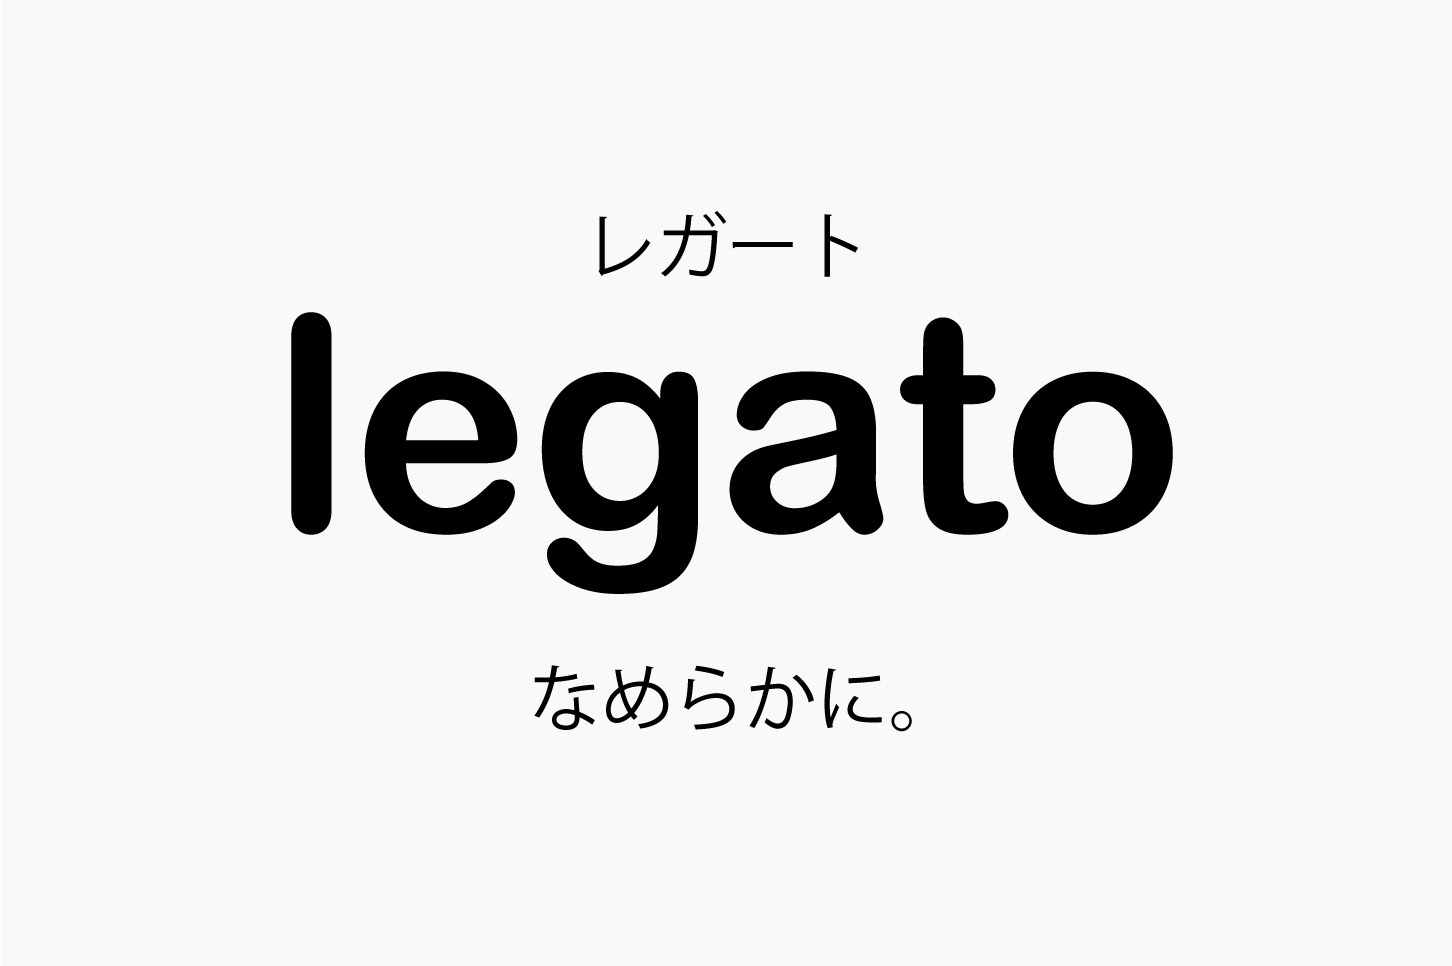 Legato レガート の意味 音楽用語辞典